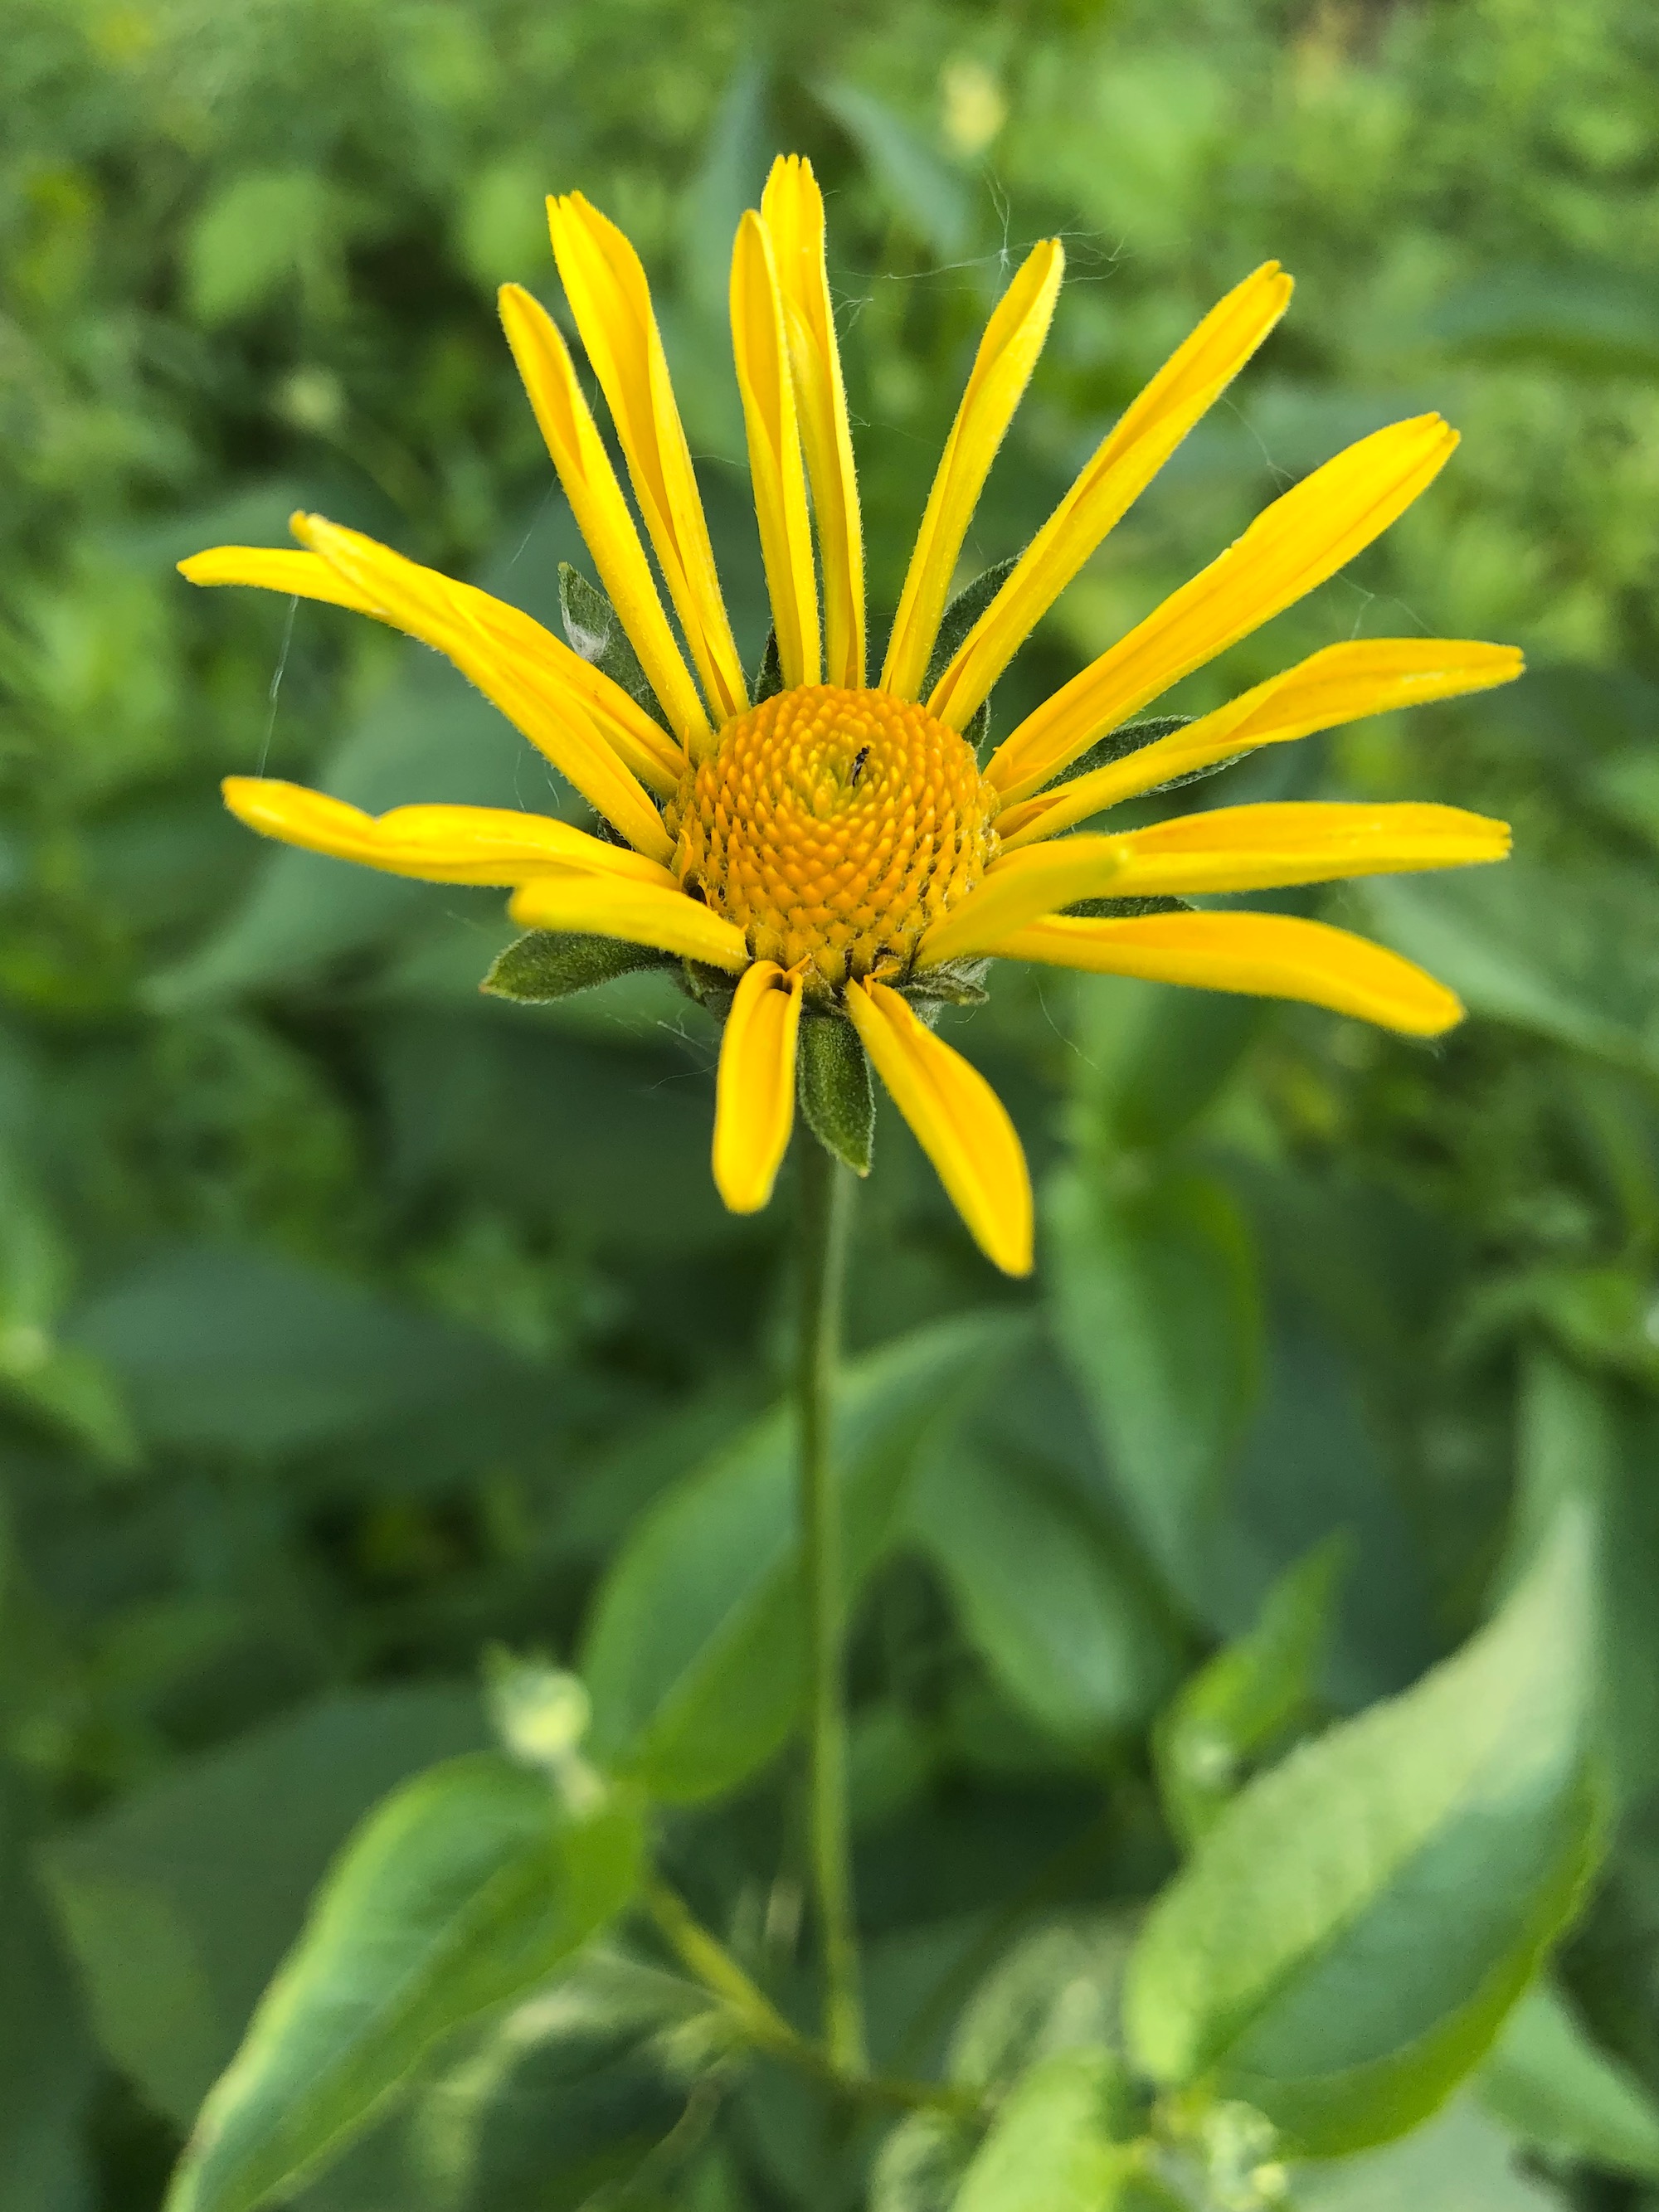 False Sunflower on shore of Marion Dunn pond in Madison, Wisconsin on June 16, 2020.